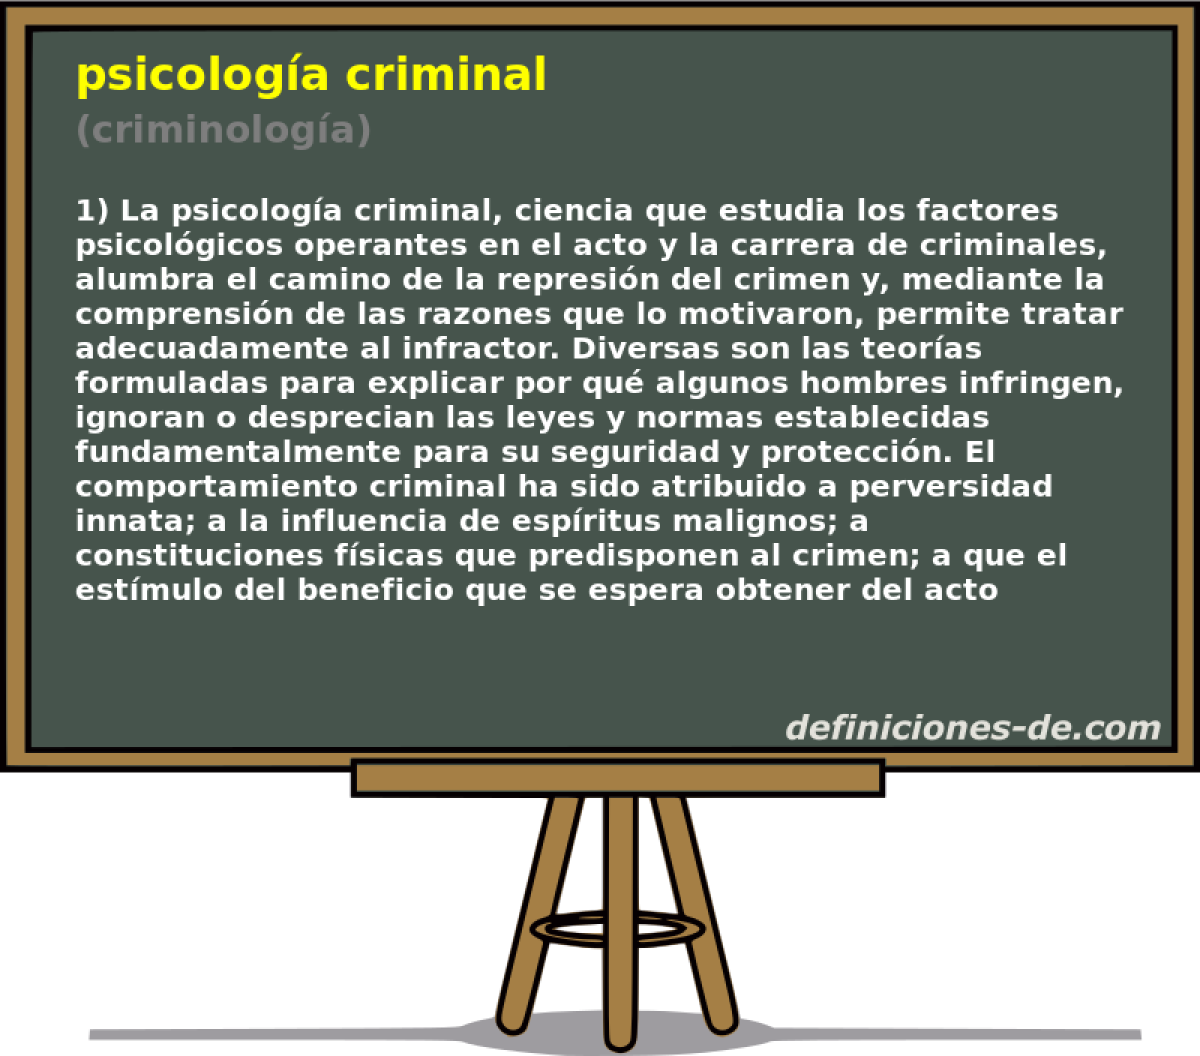 psicologa criminal (criminologa)